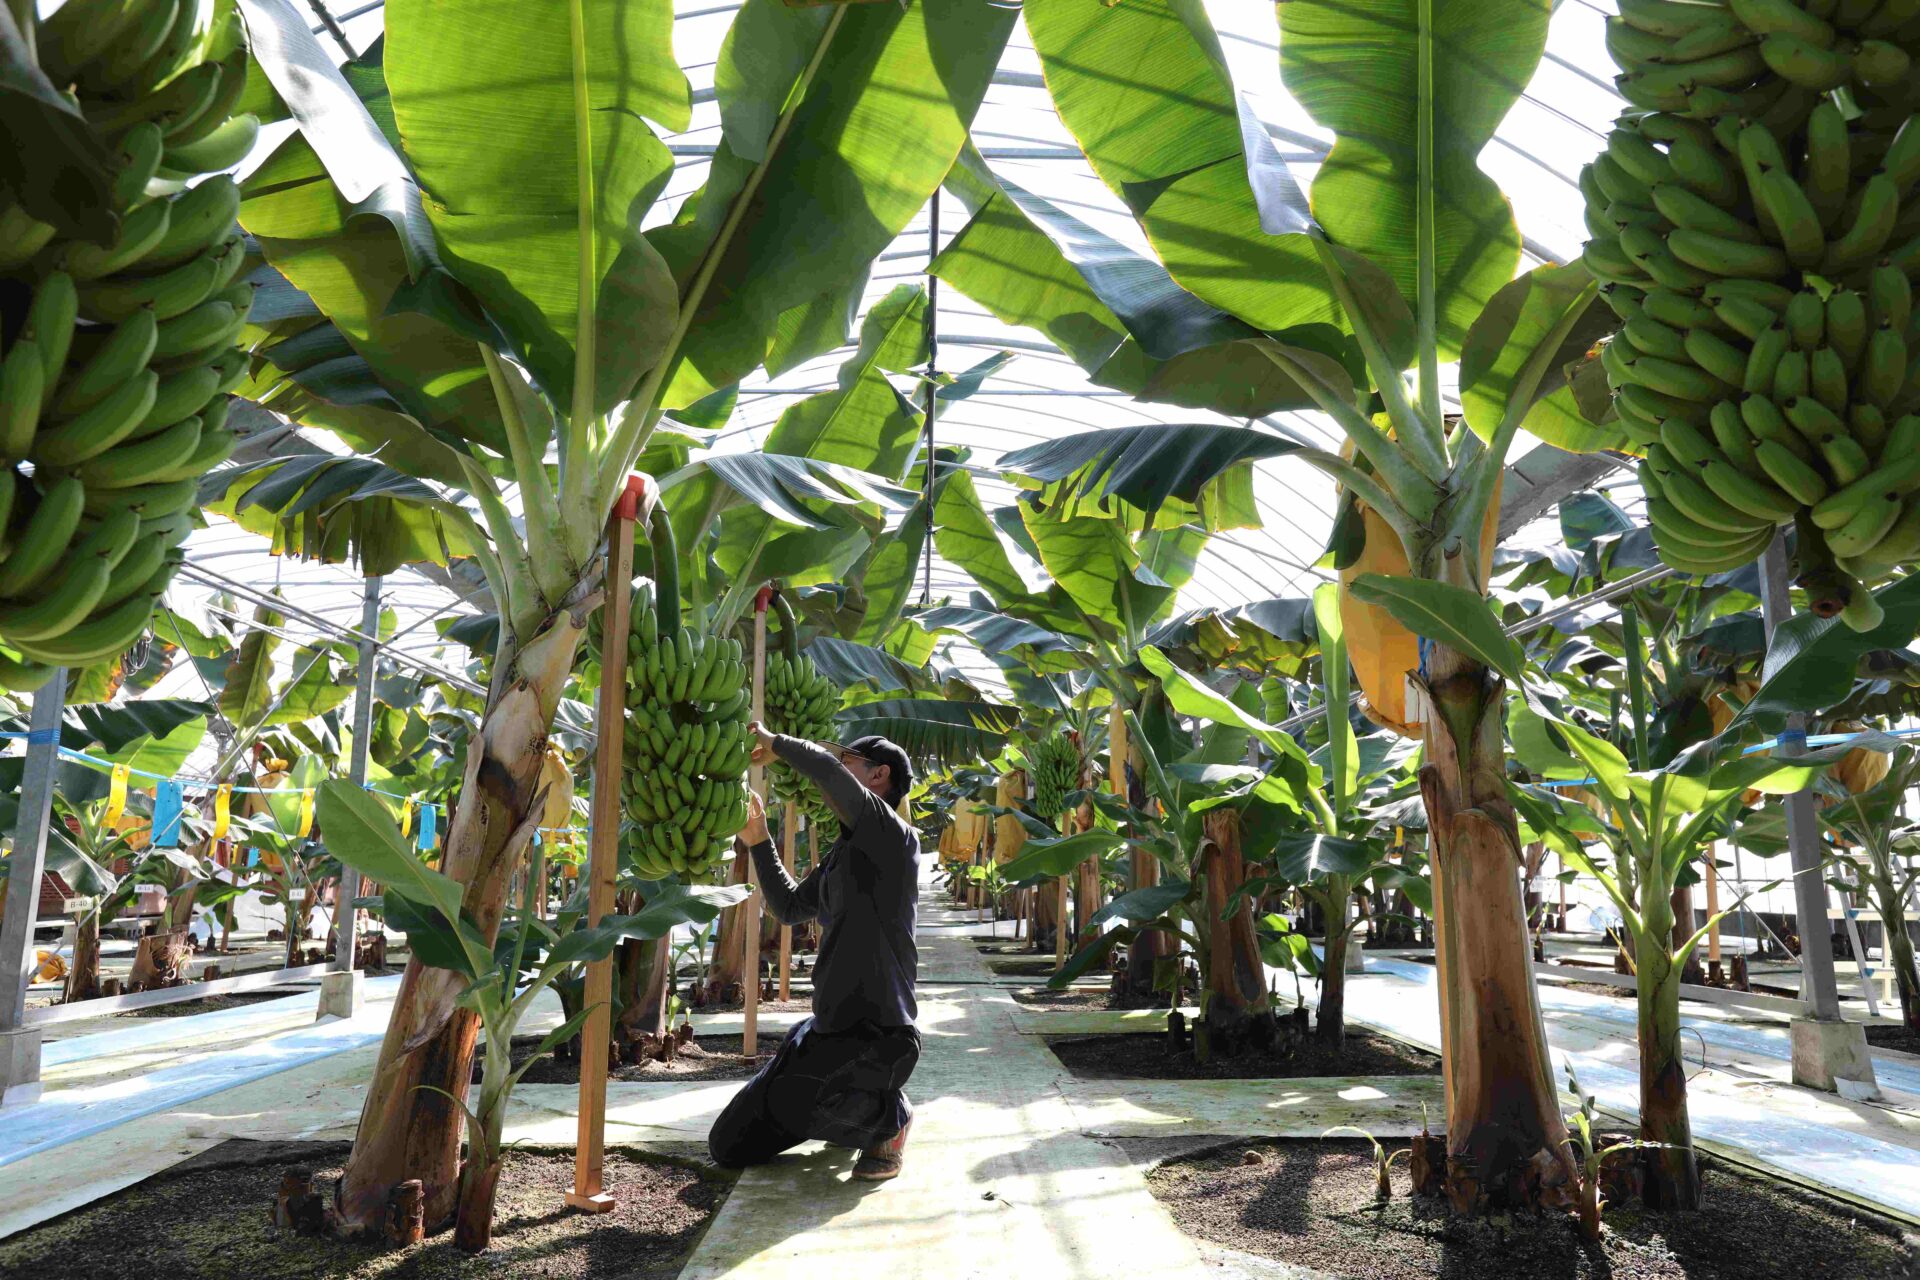 バナナ栽培の写真。バナナのふさがなんだんにもつらなっています